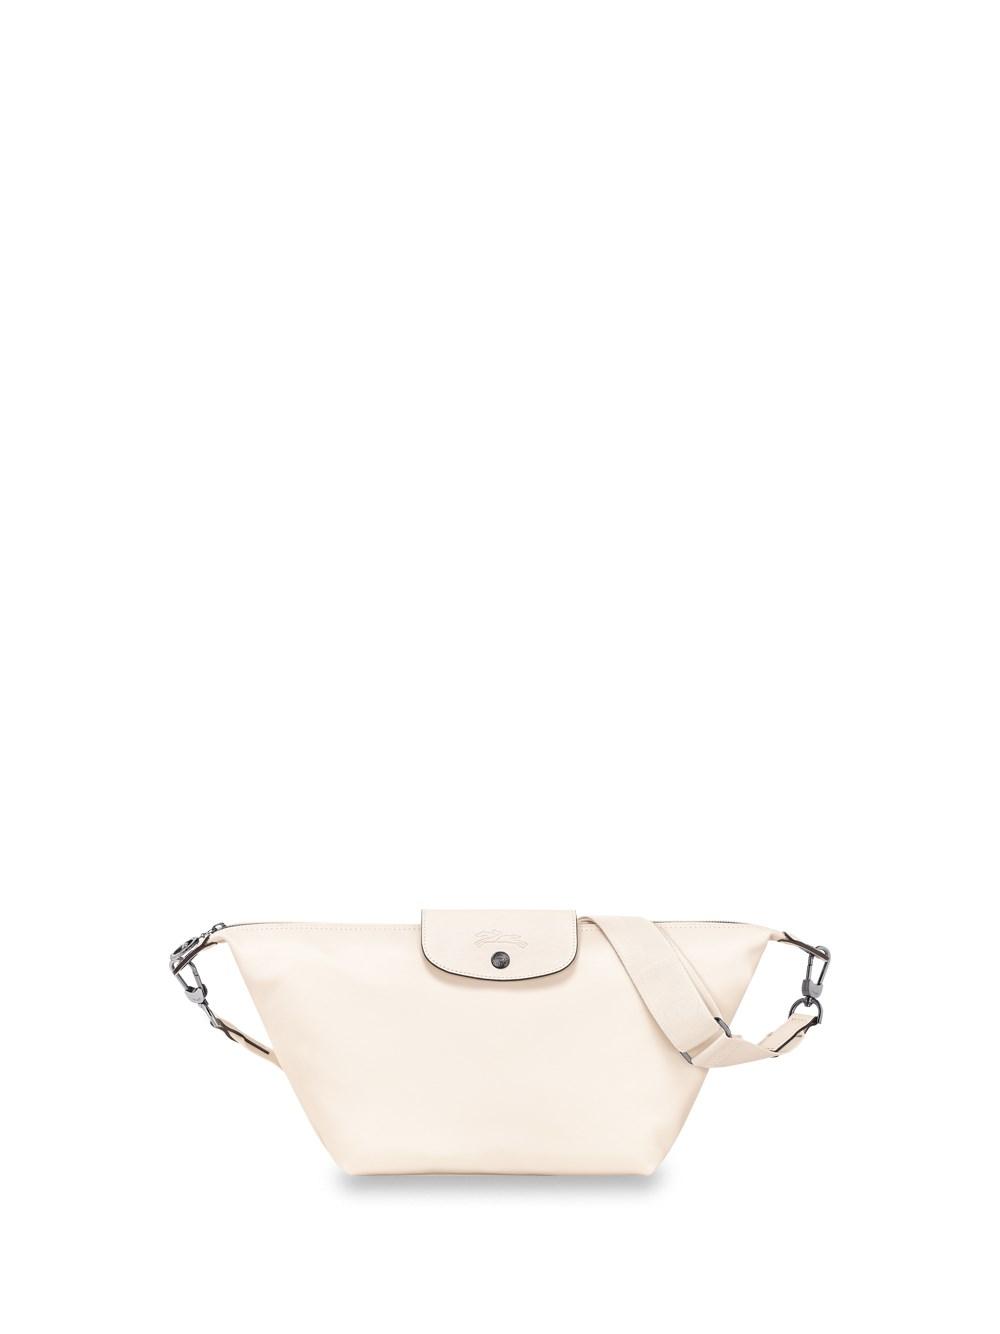 hobo medium Le Pliage Xtra shoulder bag $3480 #longchamp代購 #longchamp  #longchamplepliage #longchamporiginal #longchampneo #longchampbag…